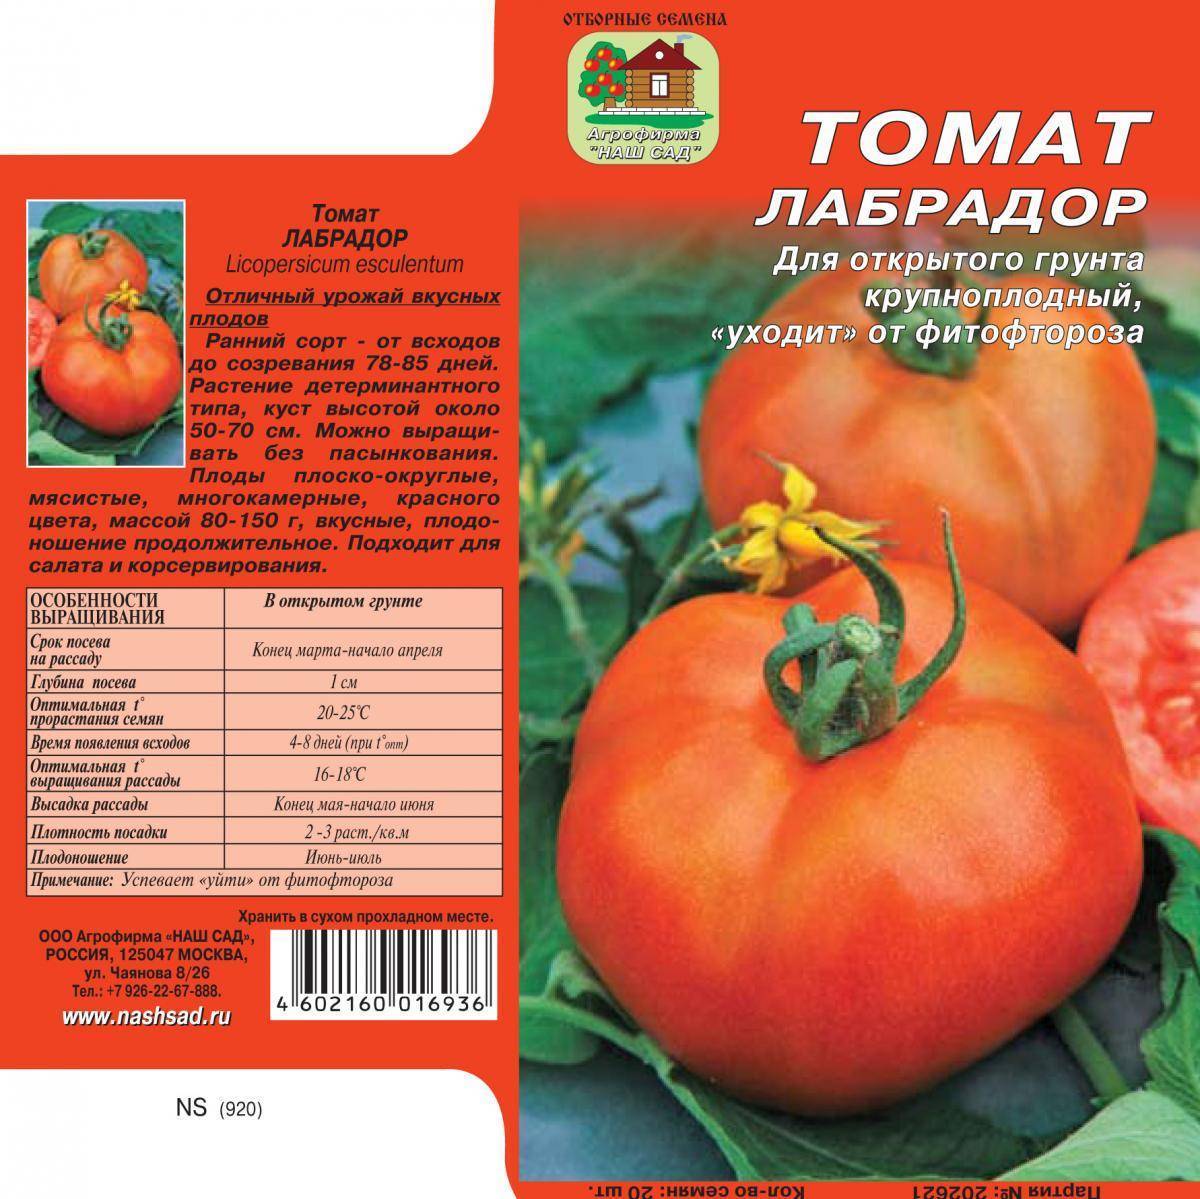 Томат дрова: описание сорта, фото помидоров и отзывы начинающих и опытных дачников, а также рекомендации по уходу за рассадой и кустами